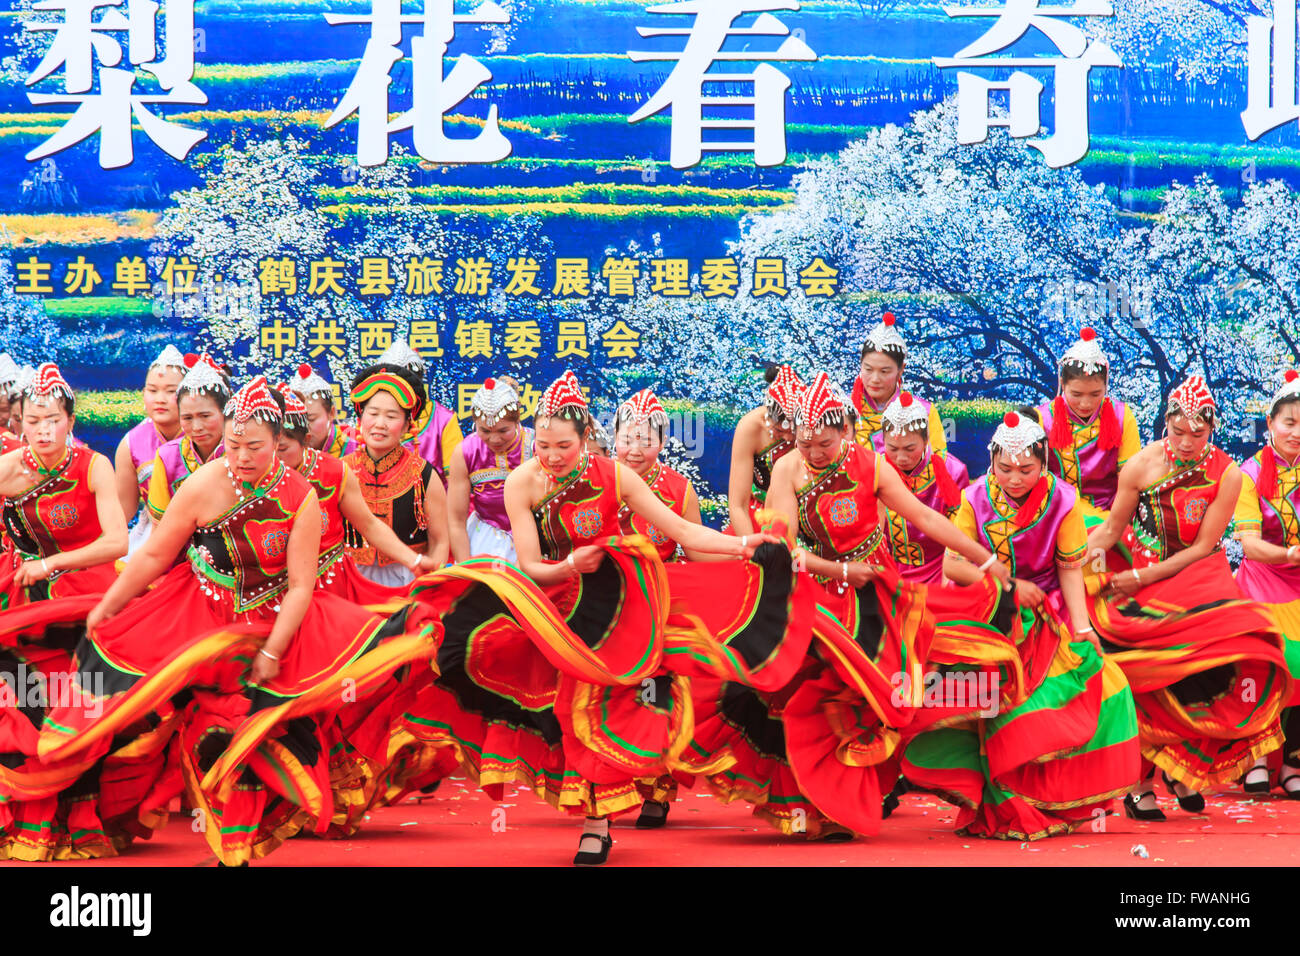 Heqing, China - Marzo 15, 2016: Las mujeres chinas vestidas con trajes tradicionales bailando y cantando durante el guisante Qifeng Heqing Foto de stock